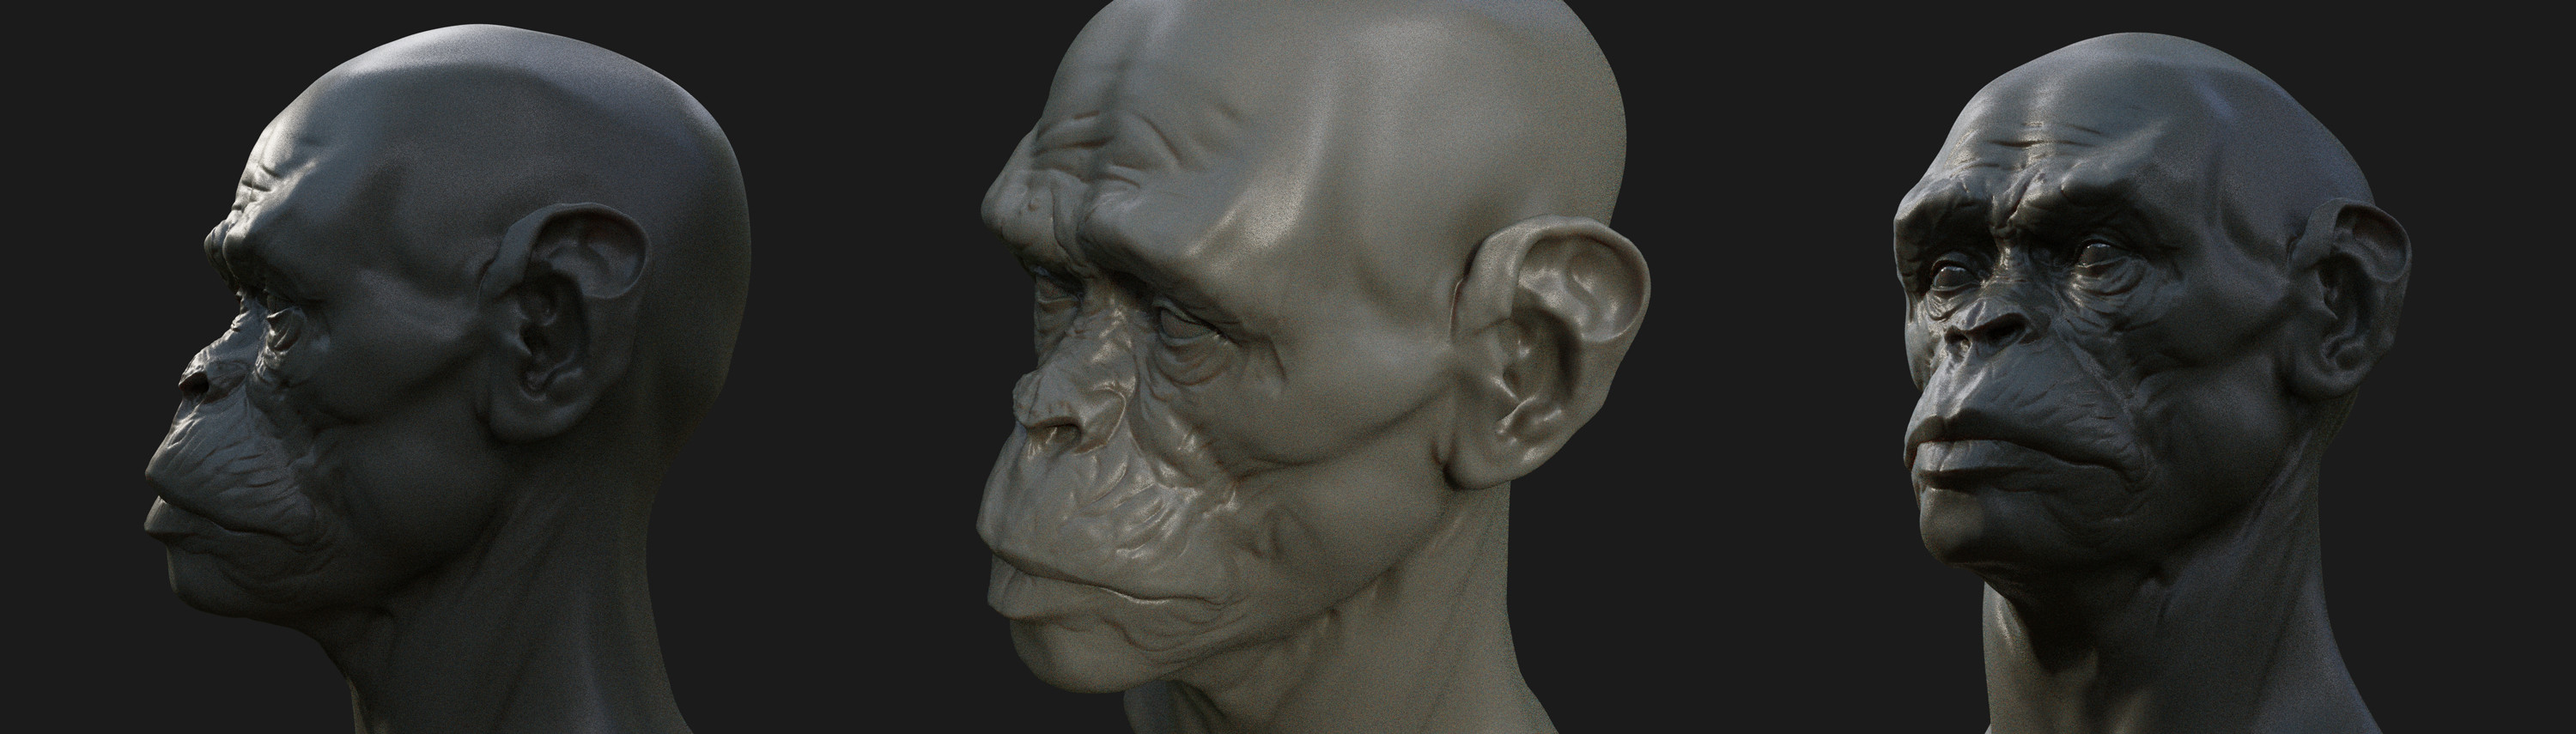 head sculpt 